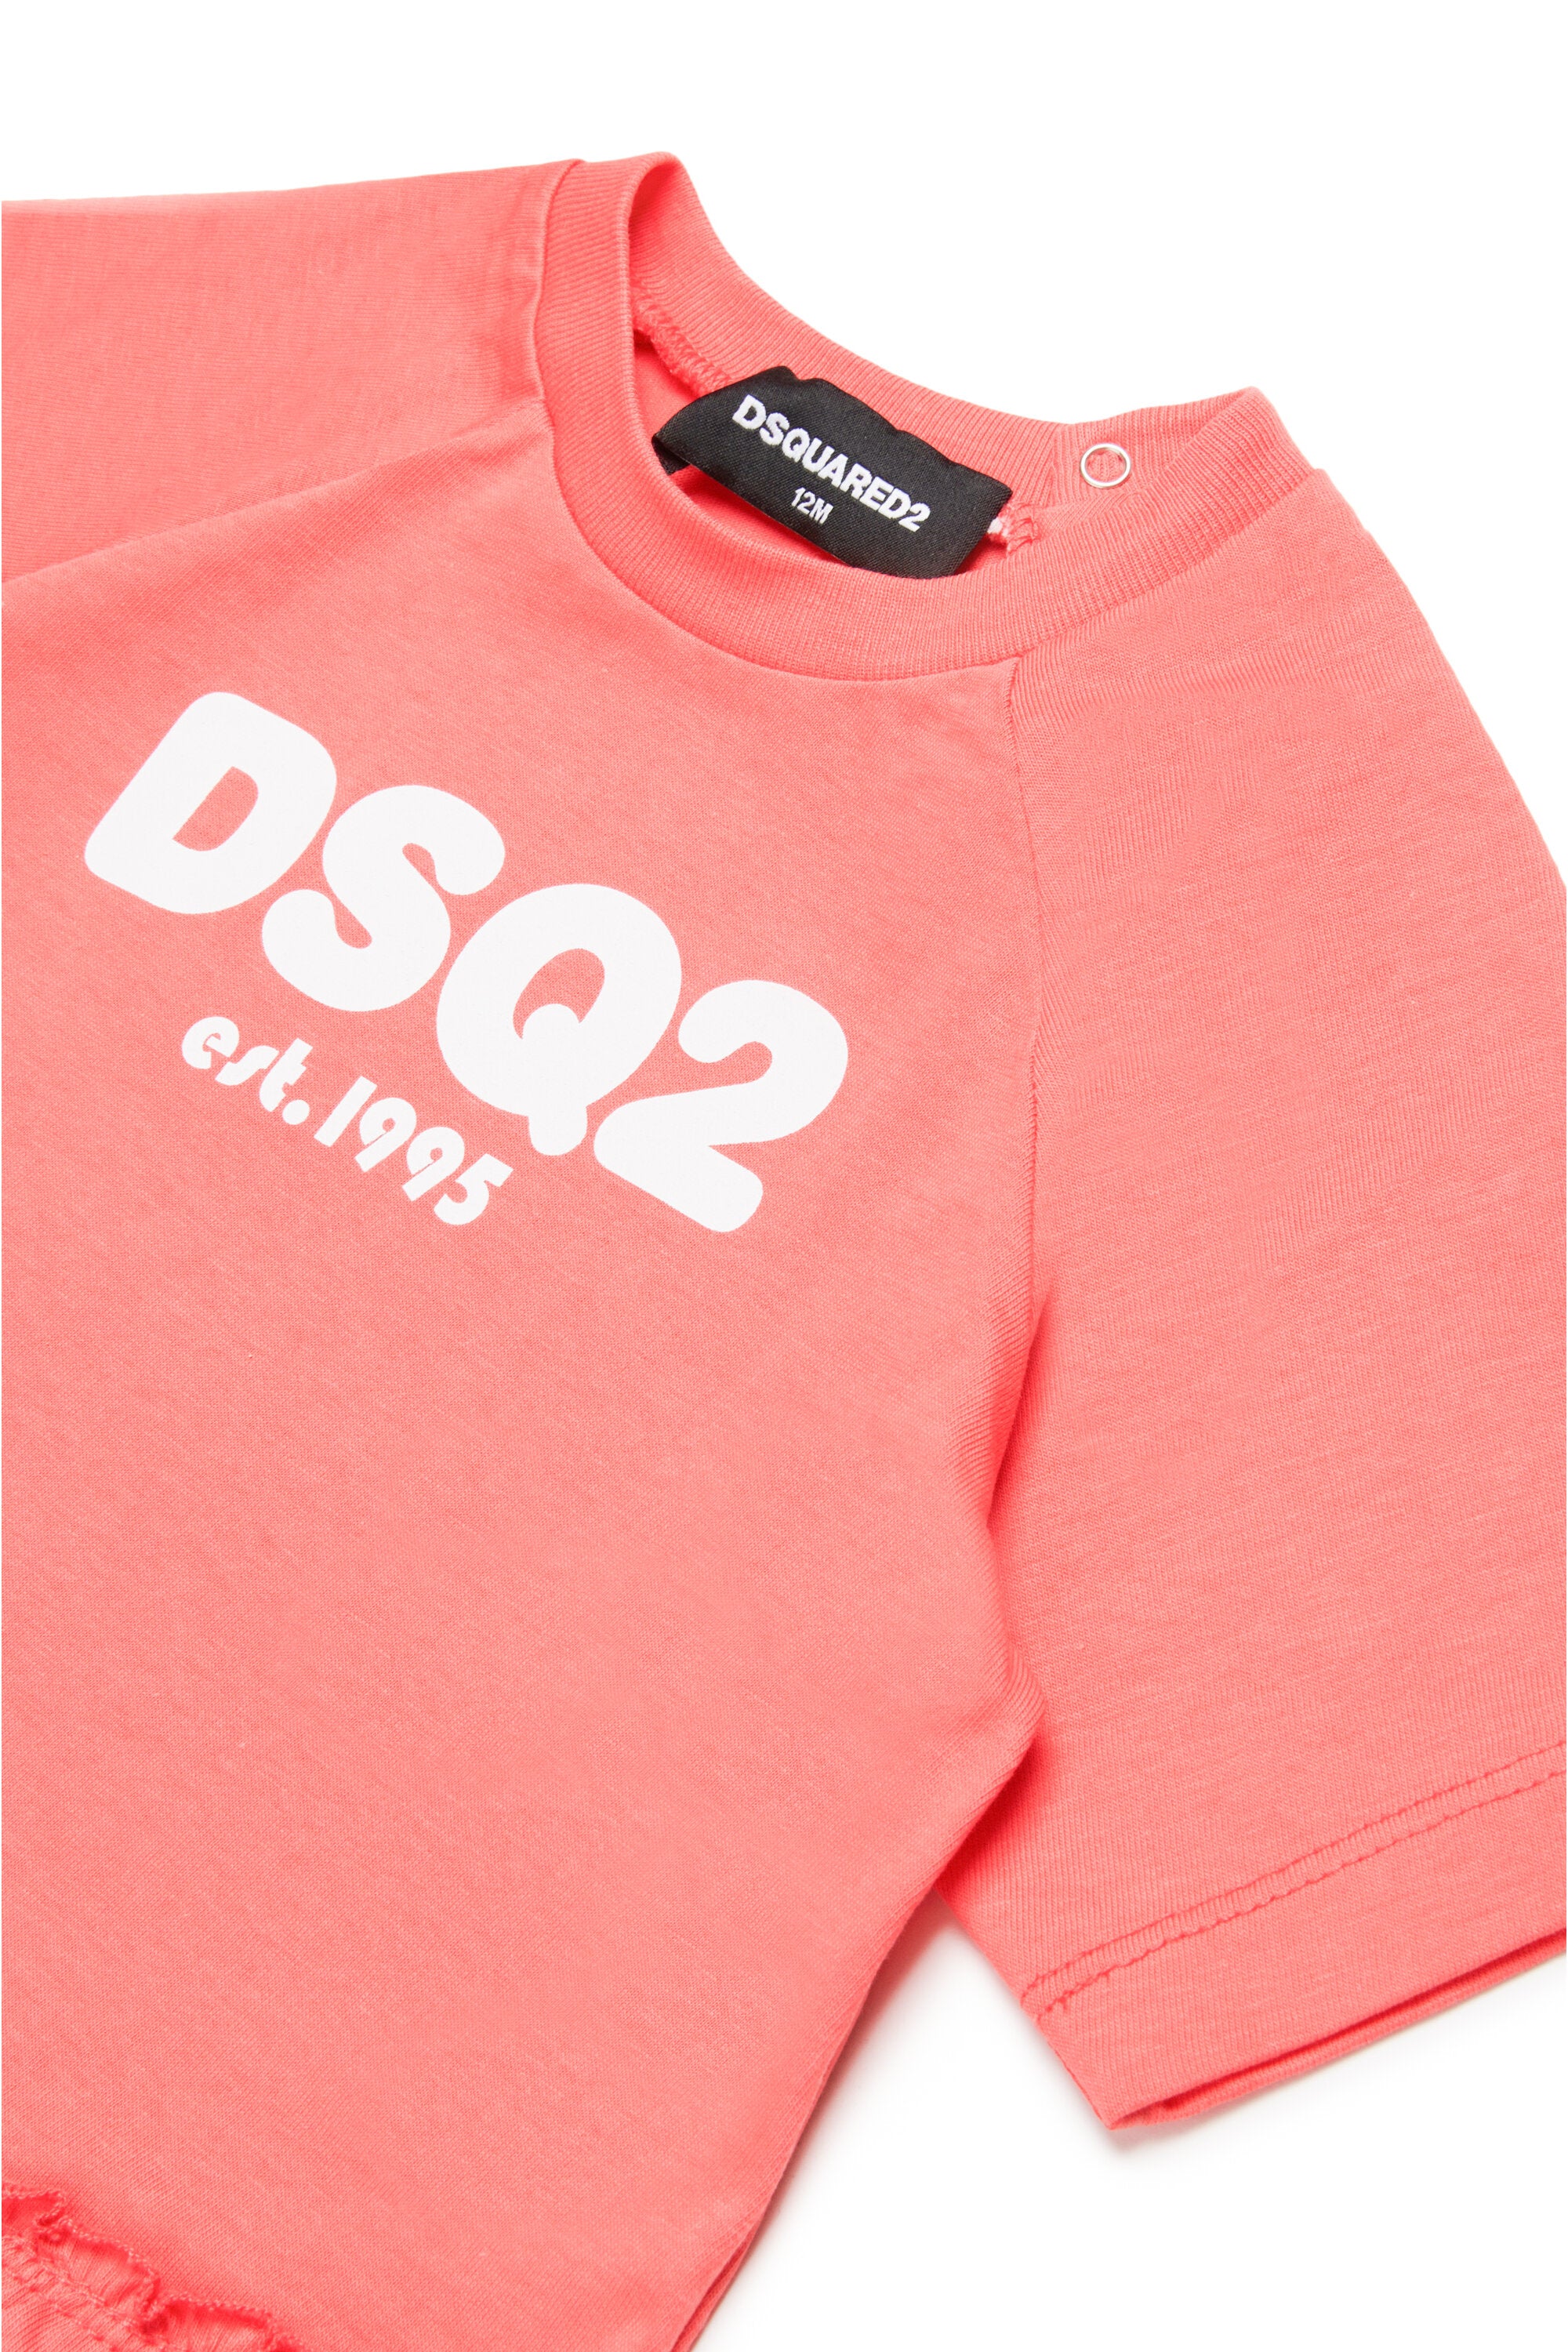 Camiseta con logotipo DSQ2 est.1995 y  volantes